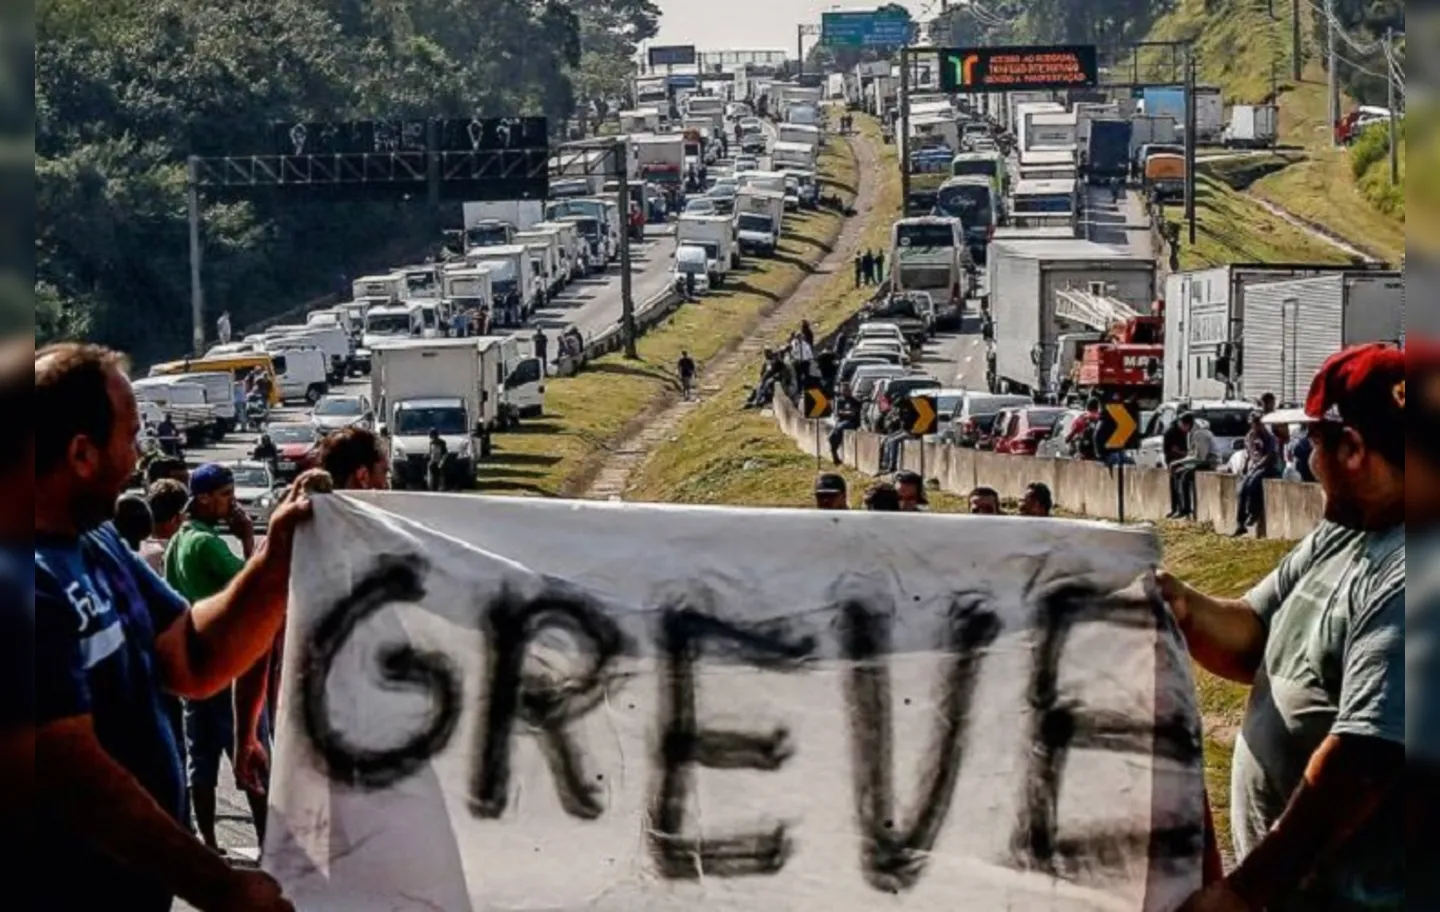 A decisão ocorreu após uma assembleia de motoristas organizada por três entidades representativas no Rio de Janeiro, incluindo participantes que lideraram a greve de 2018 | Foto: Miguel Schincariol | AFP